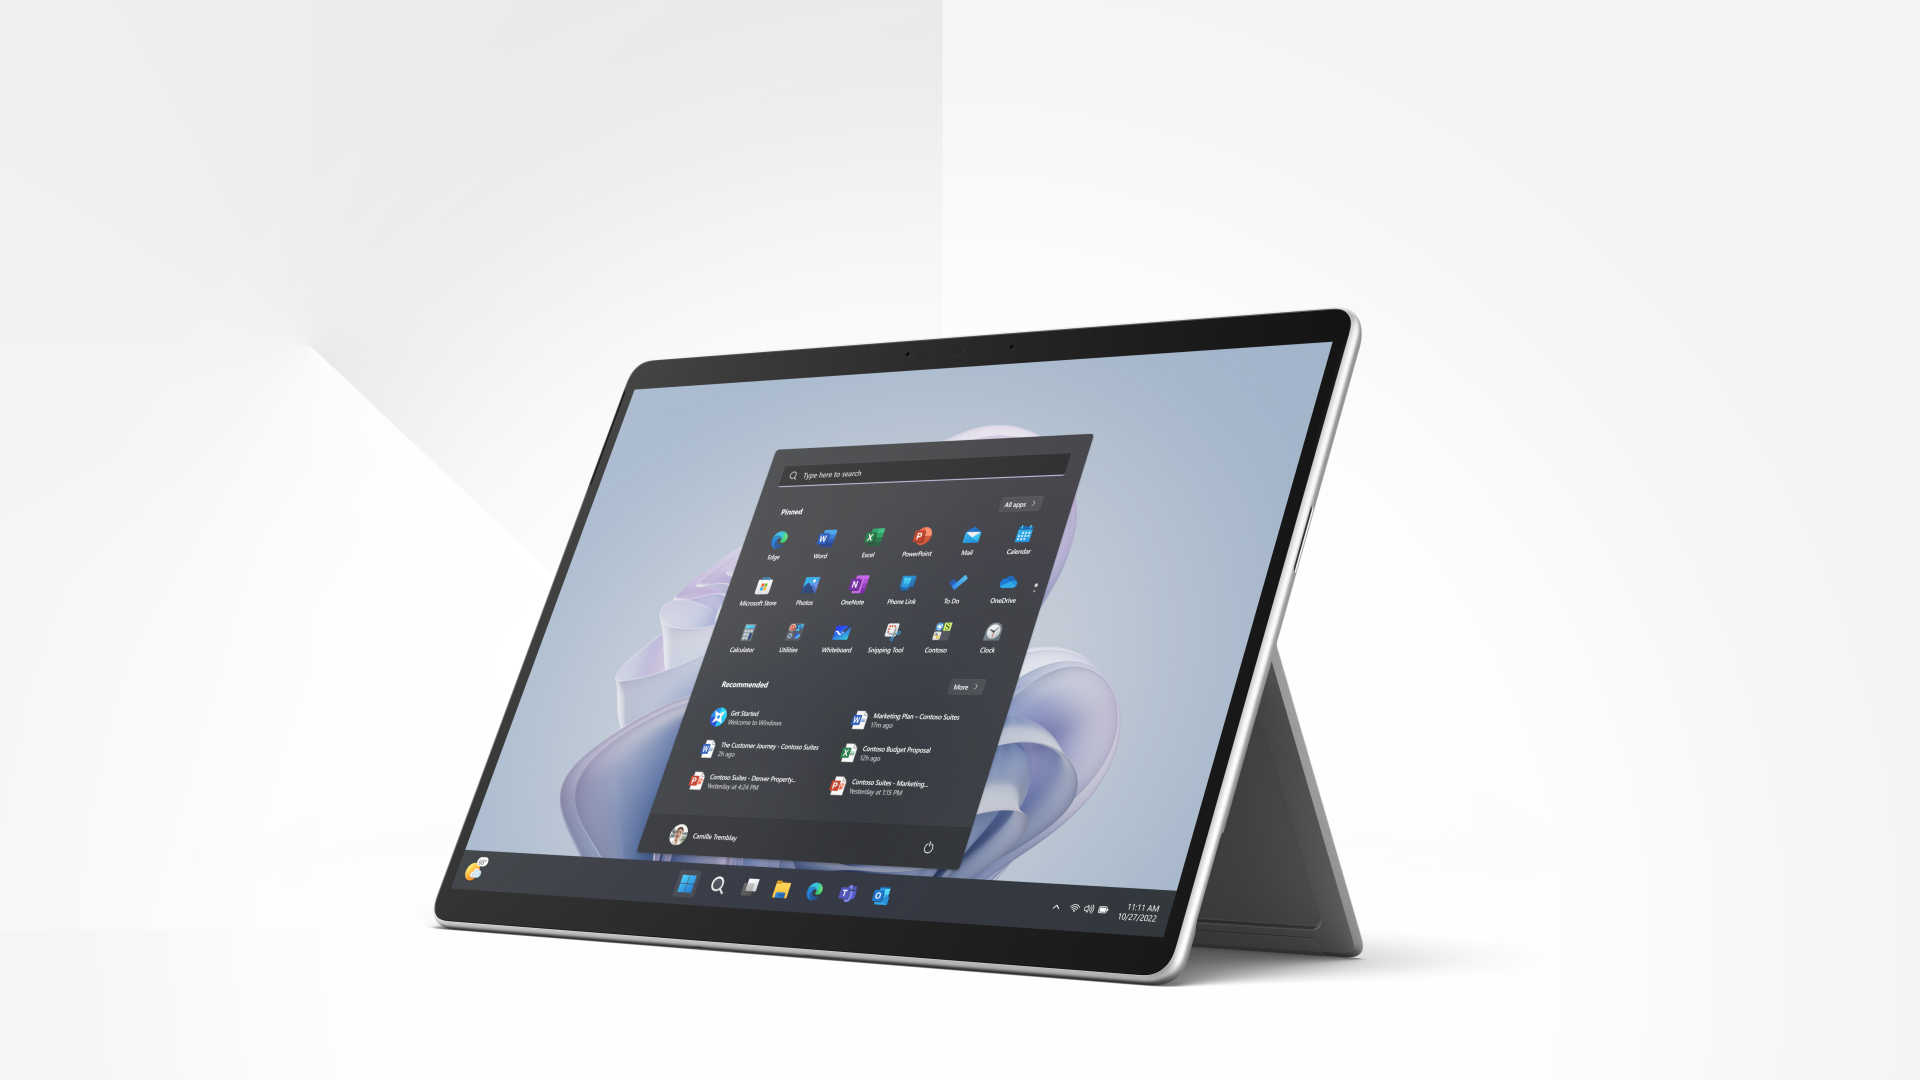 Microsoft Surface Laptop 2-in-1 là sản phẩm hoàn hảo cho những ai cần một chiếc máy tính đa năng, có thể sử dụng như laptop và máy tính bảng. Với thiết kế mỏng nhẹ và cấu hình mạnh mẽ, Microsoft Surface Laptop sẽ giúp bạn hoàn thành công việc và giải trí một cách dễ dàng.